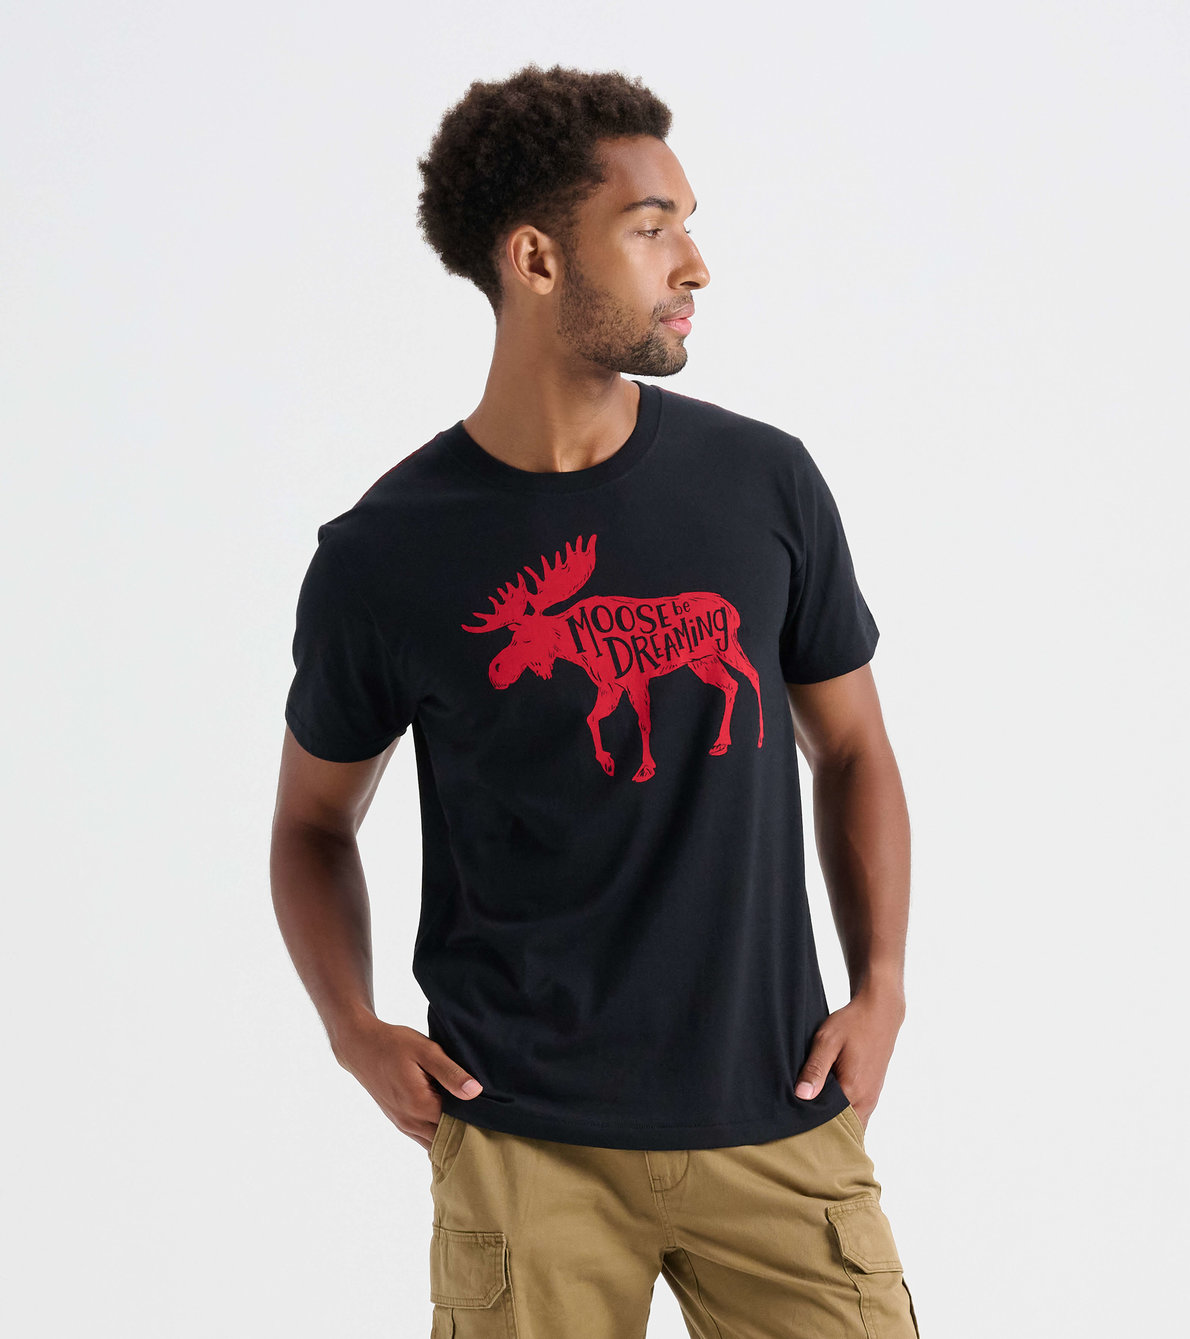 Agrandir l'image de T-shirt pour homme – Orignal « I Moose Be Dreaming »